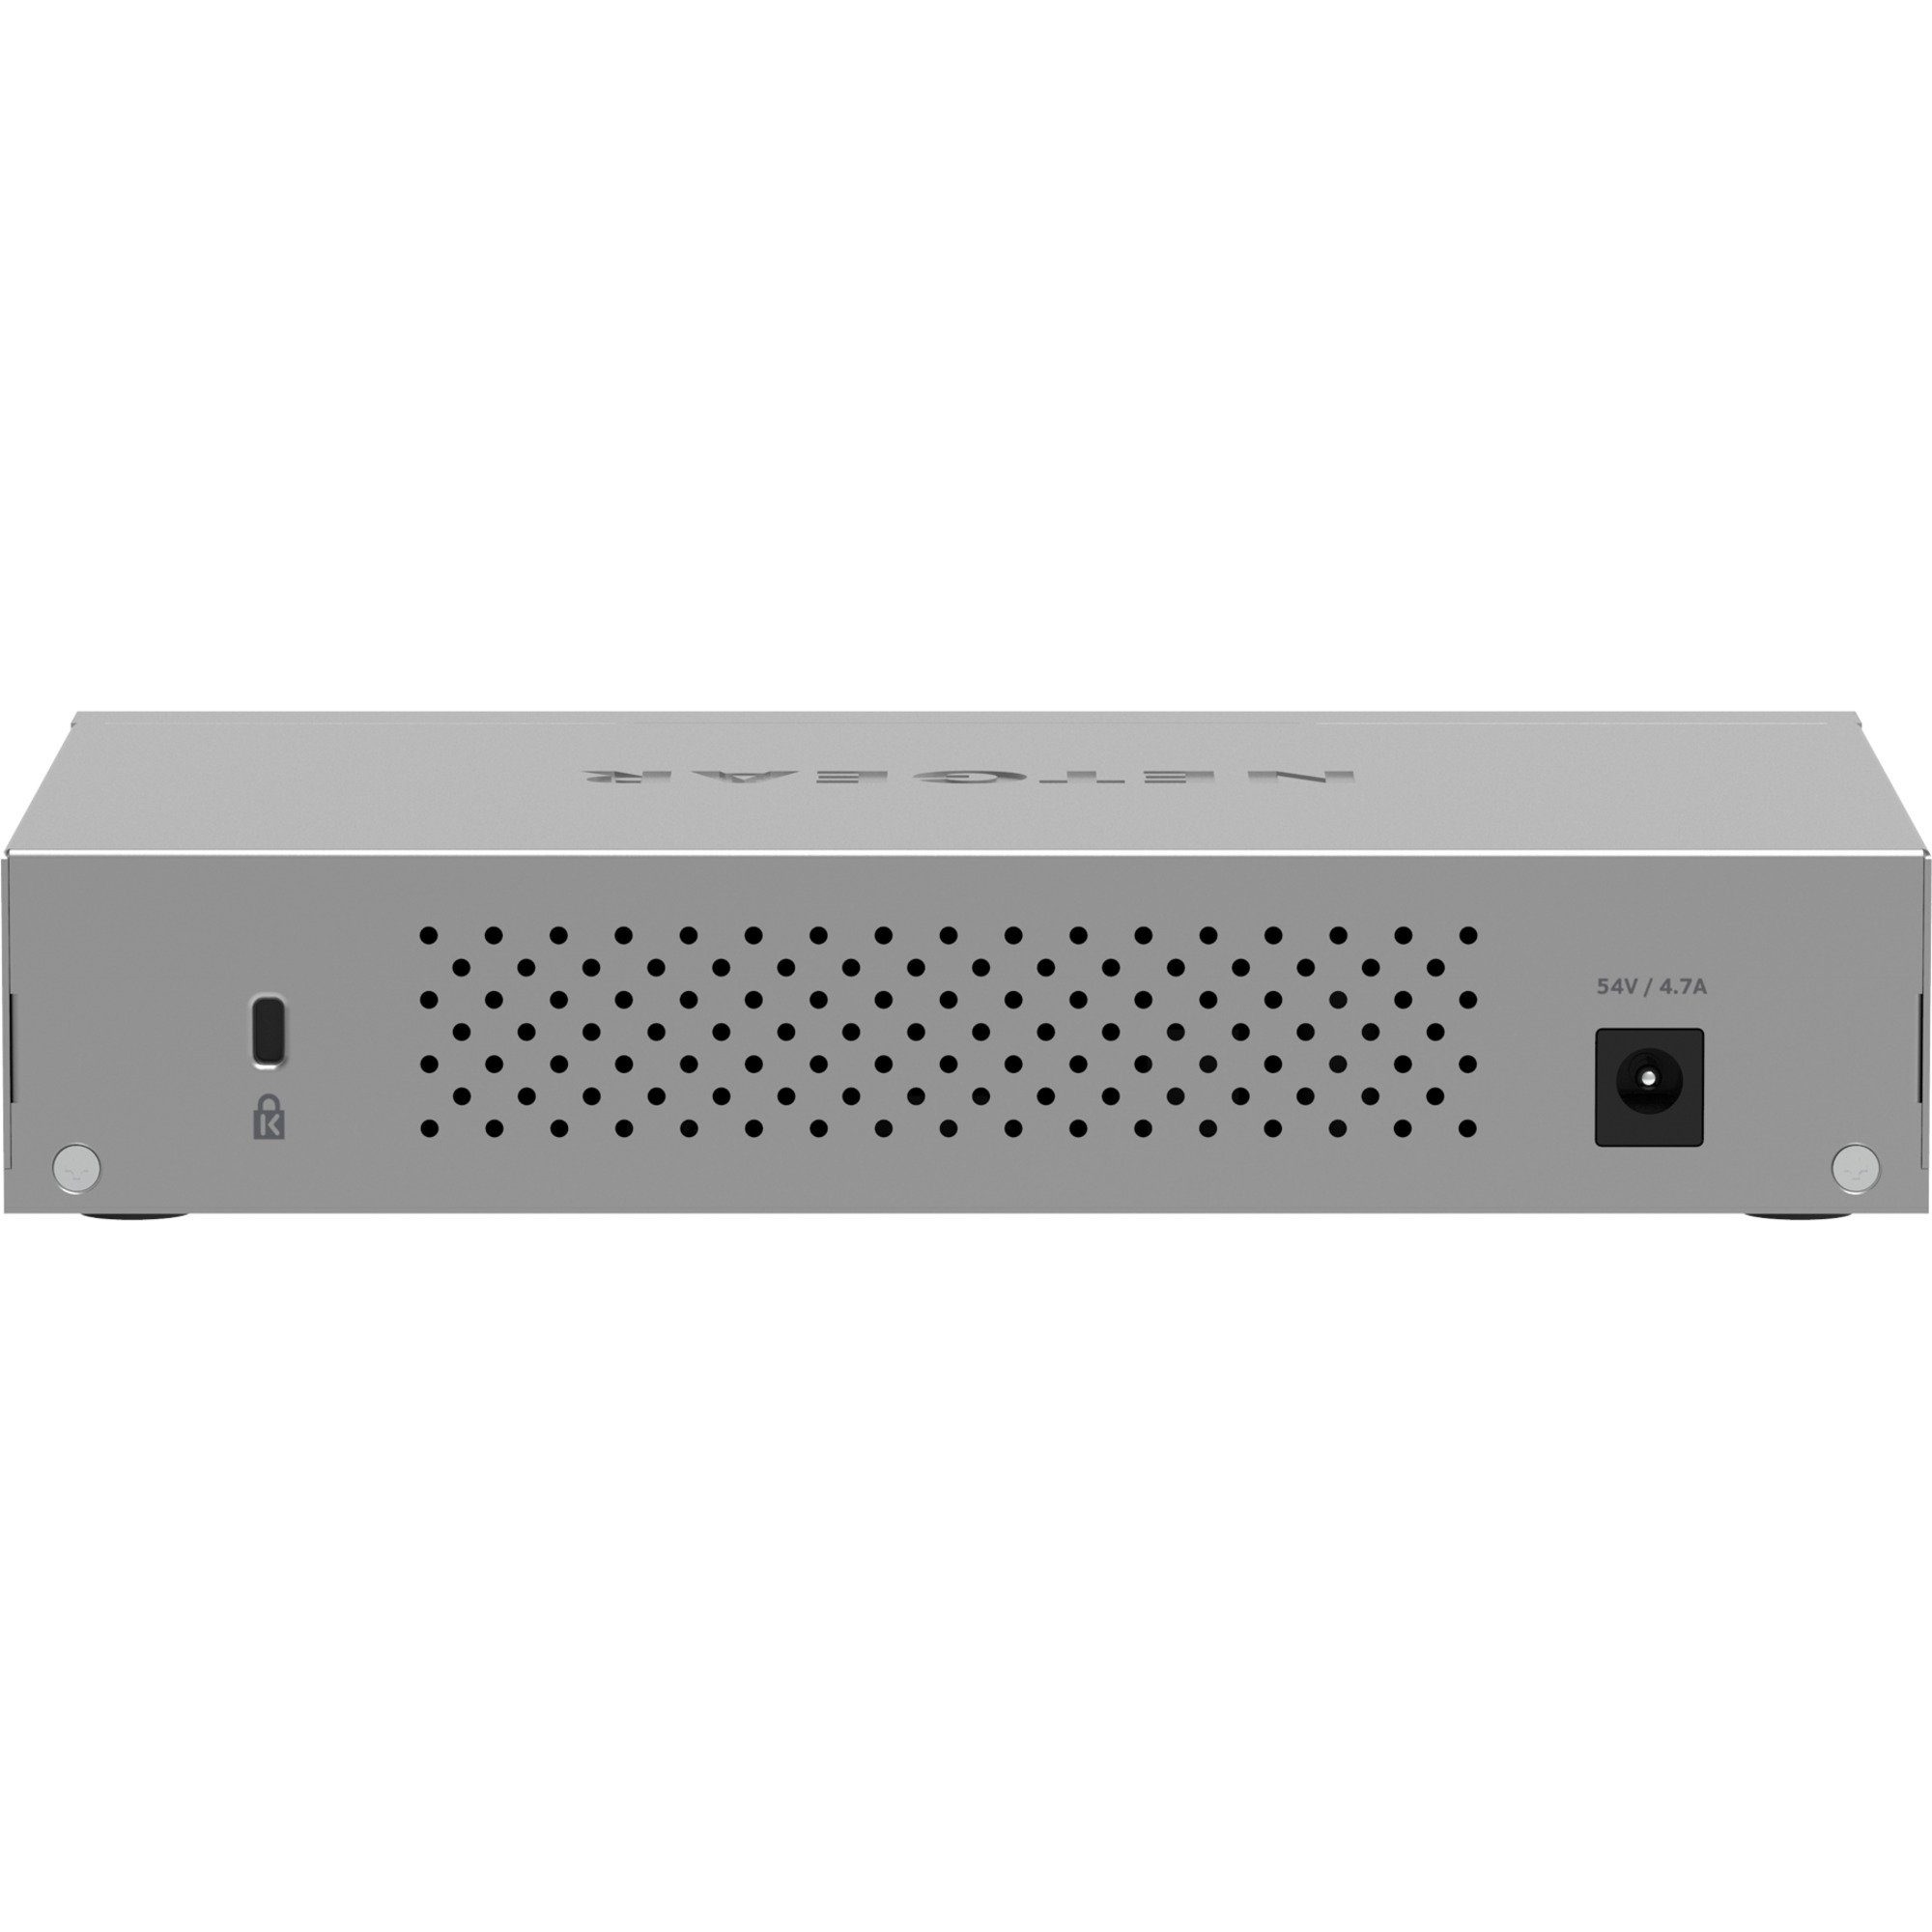 Switch Netgear NETGEAR 60 8-Port PoE, Ultra MS108UP Netzwerk-Switch